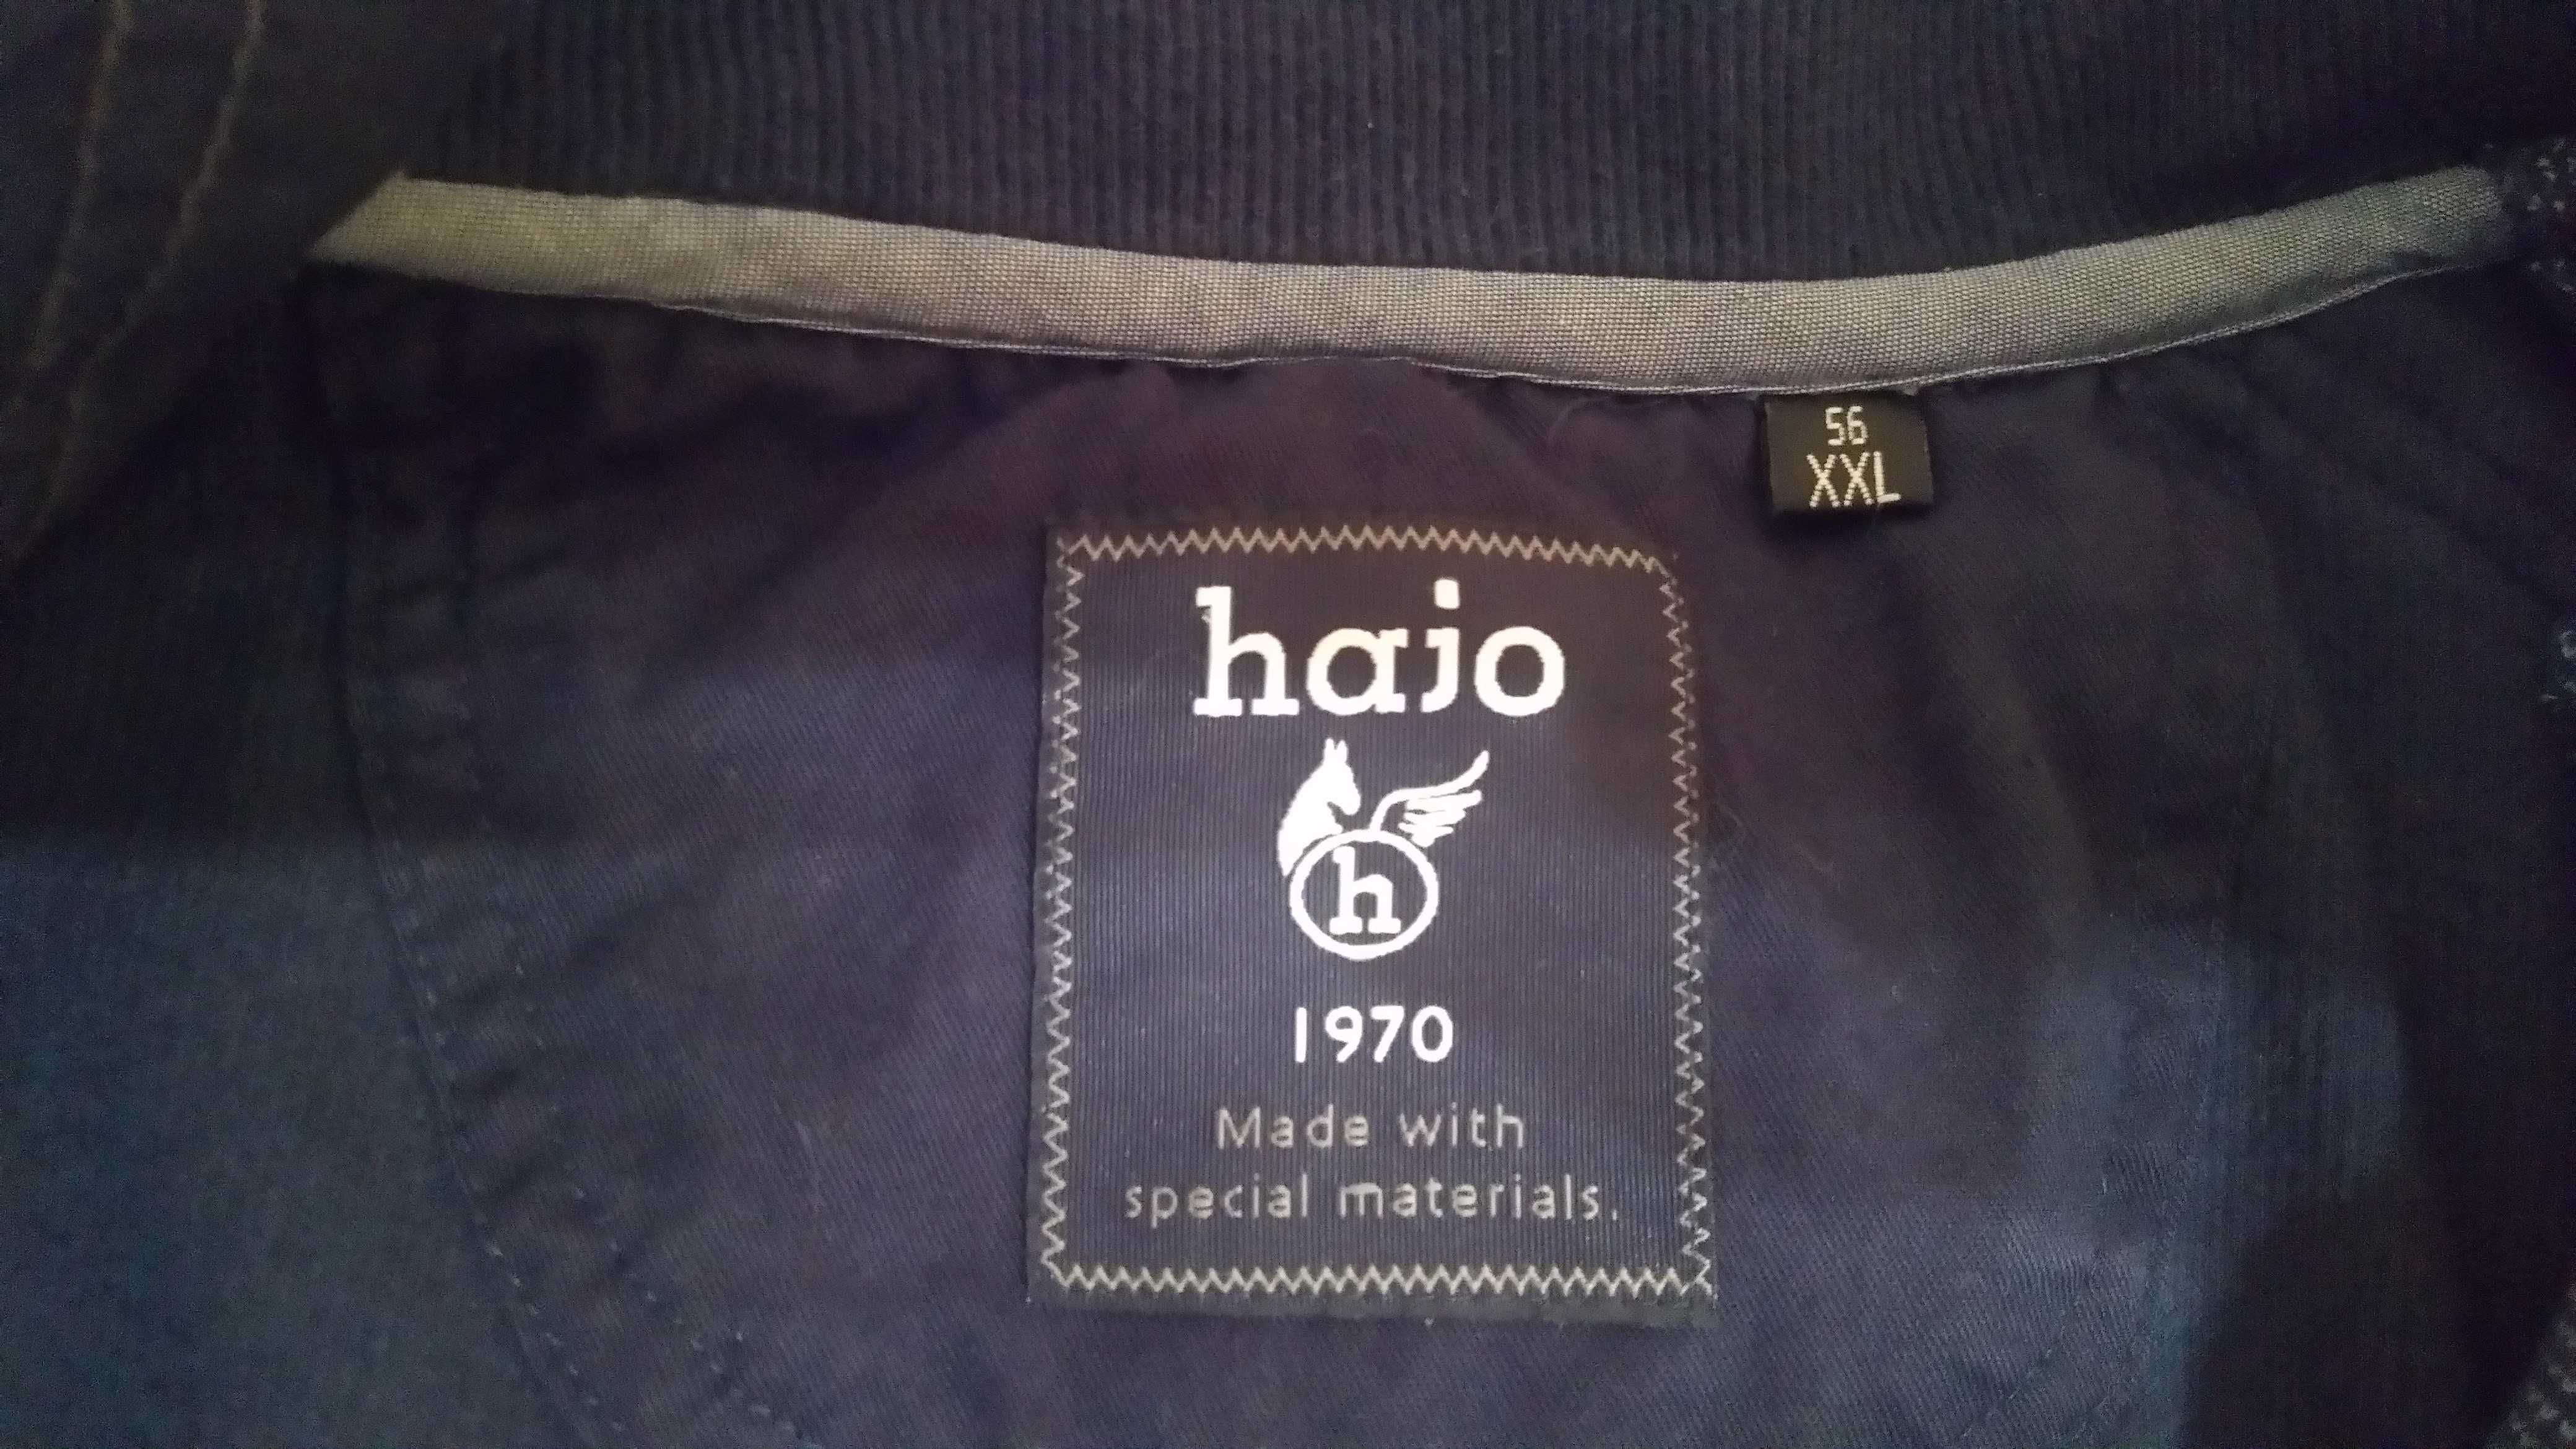 Неношений светр фірми Hajo. Розмір: 56 (XХL). Виробник: ФРН..